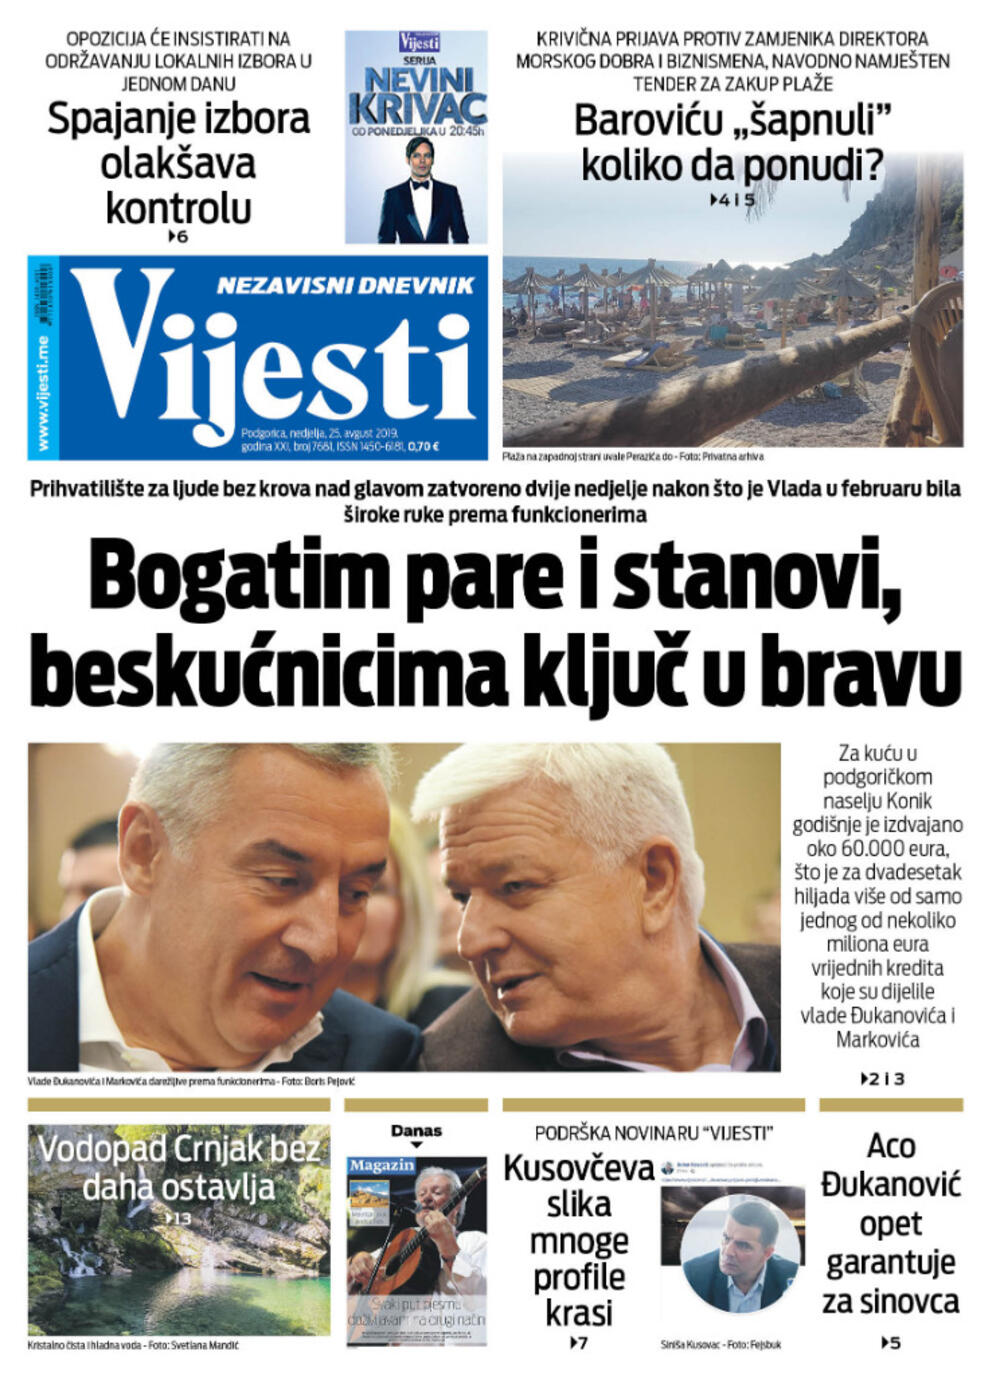 Štampano izdanje "Vijesti" za 25. avgust